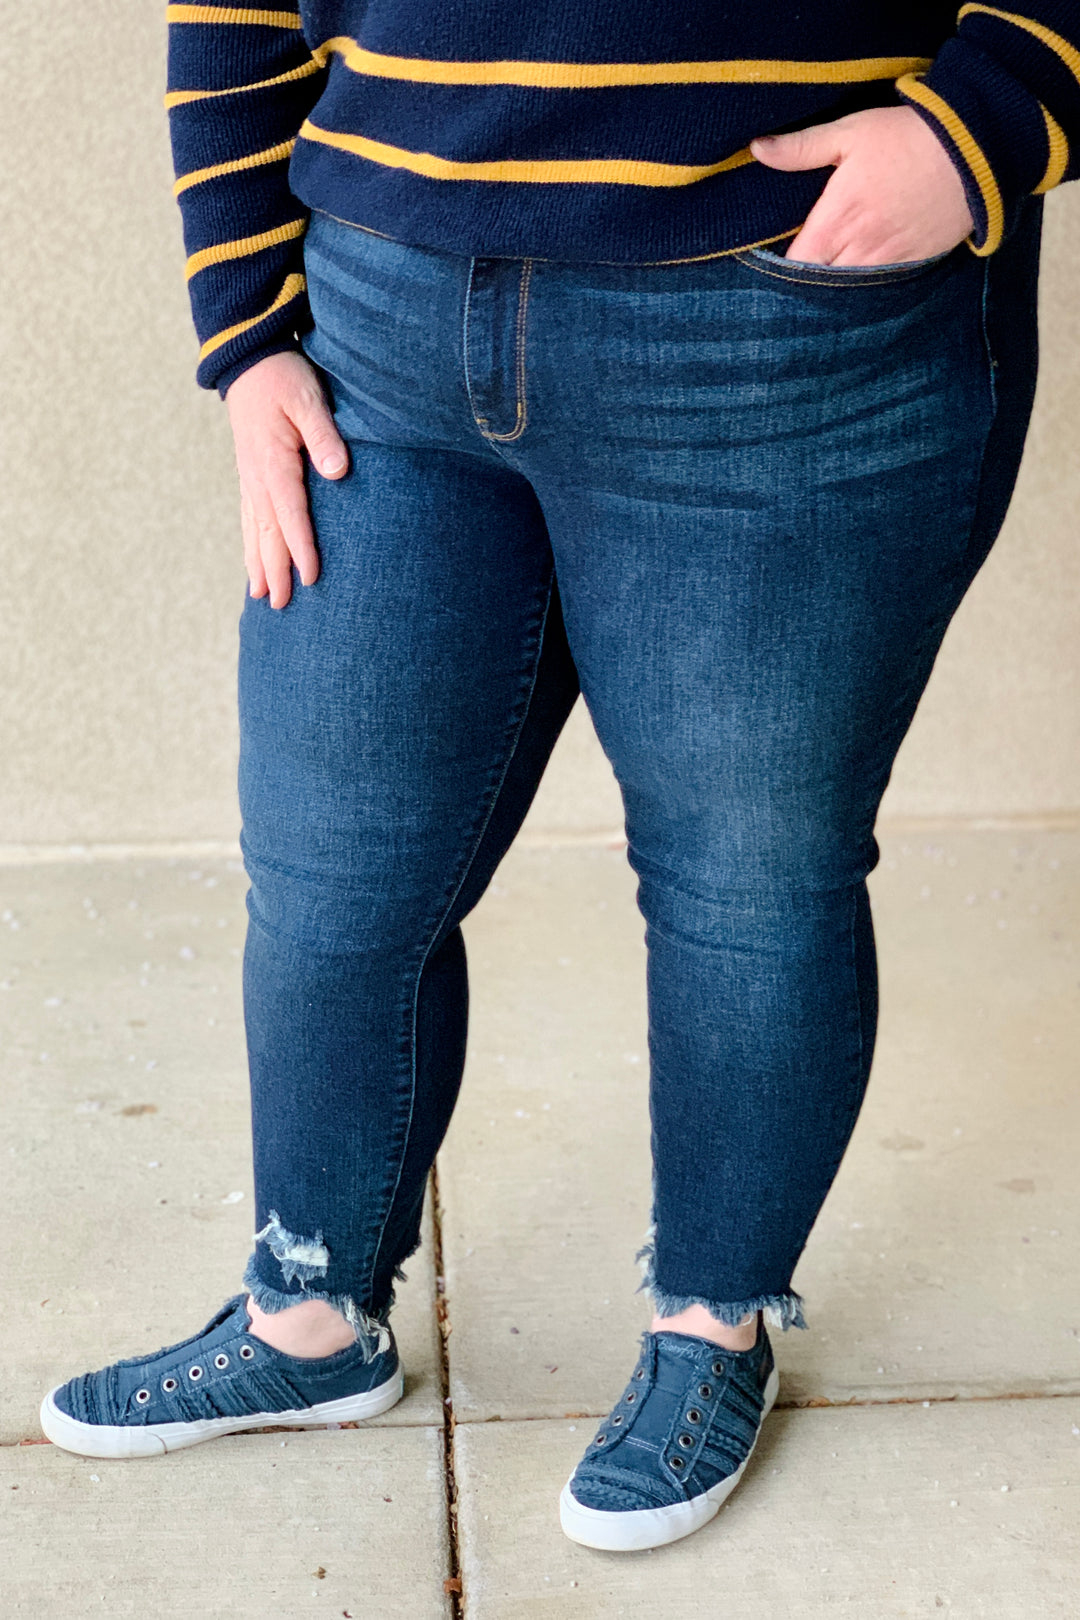 Selene Dark Wash Slim Fit Jean by Judy Blue | (Size 24W)